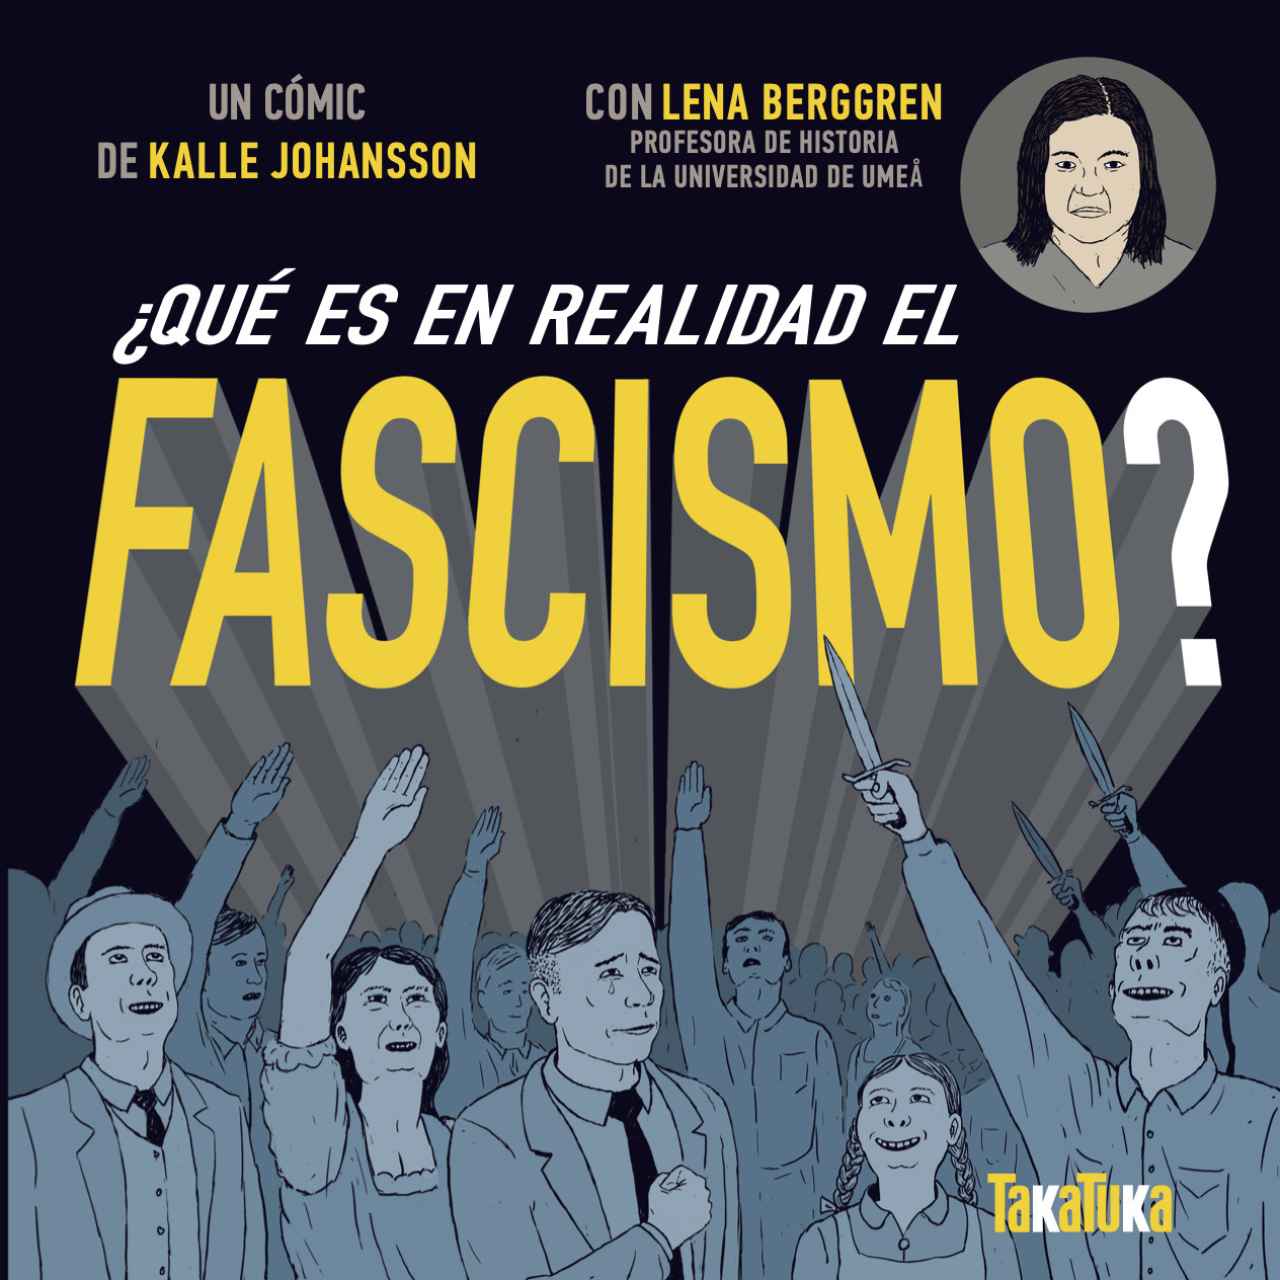 ¿Qué es en realidad el fascismo? De Kalle Johansson